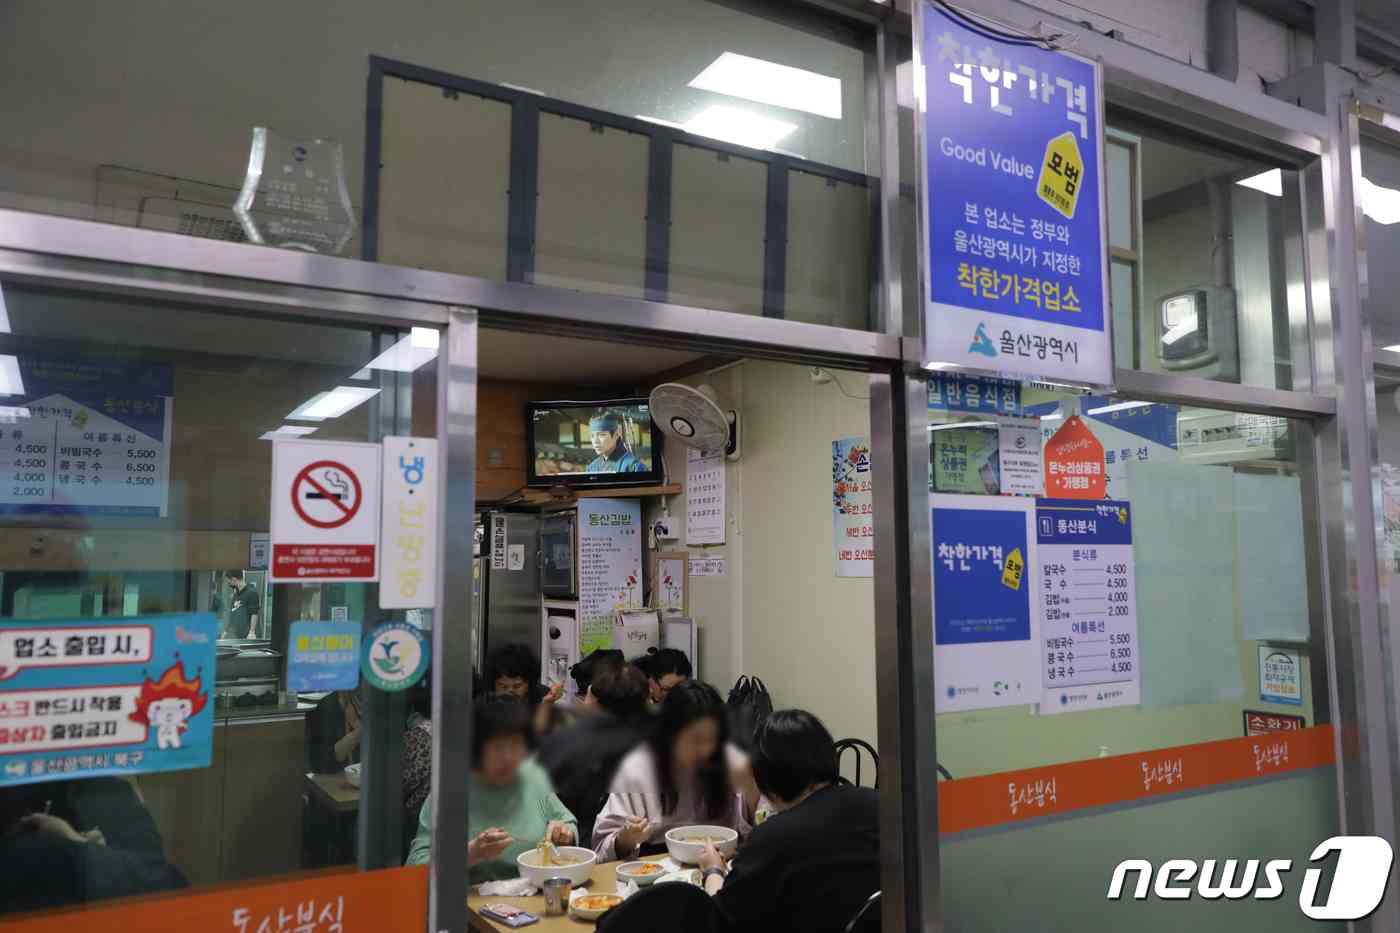 4500원에 칼국수를 판매하는 울산 북구 동산분식 가게 내부.